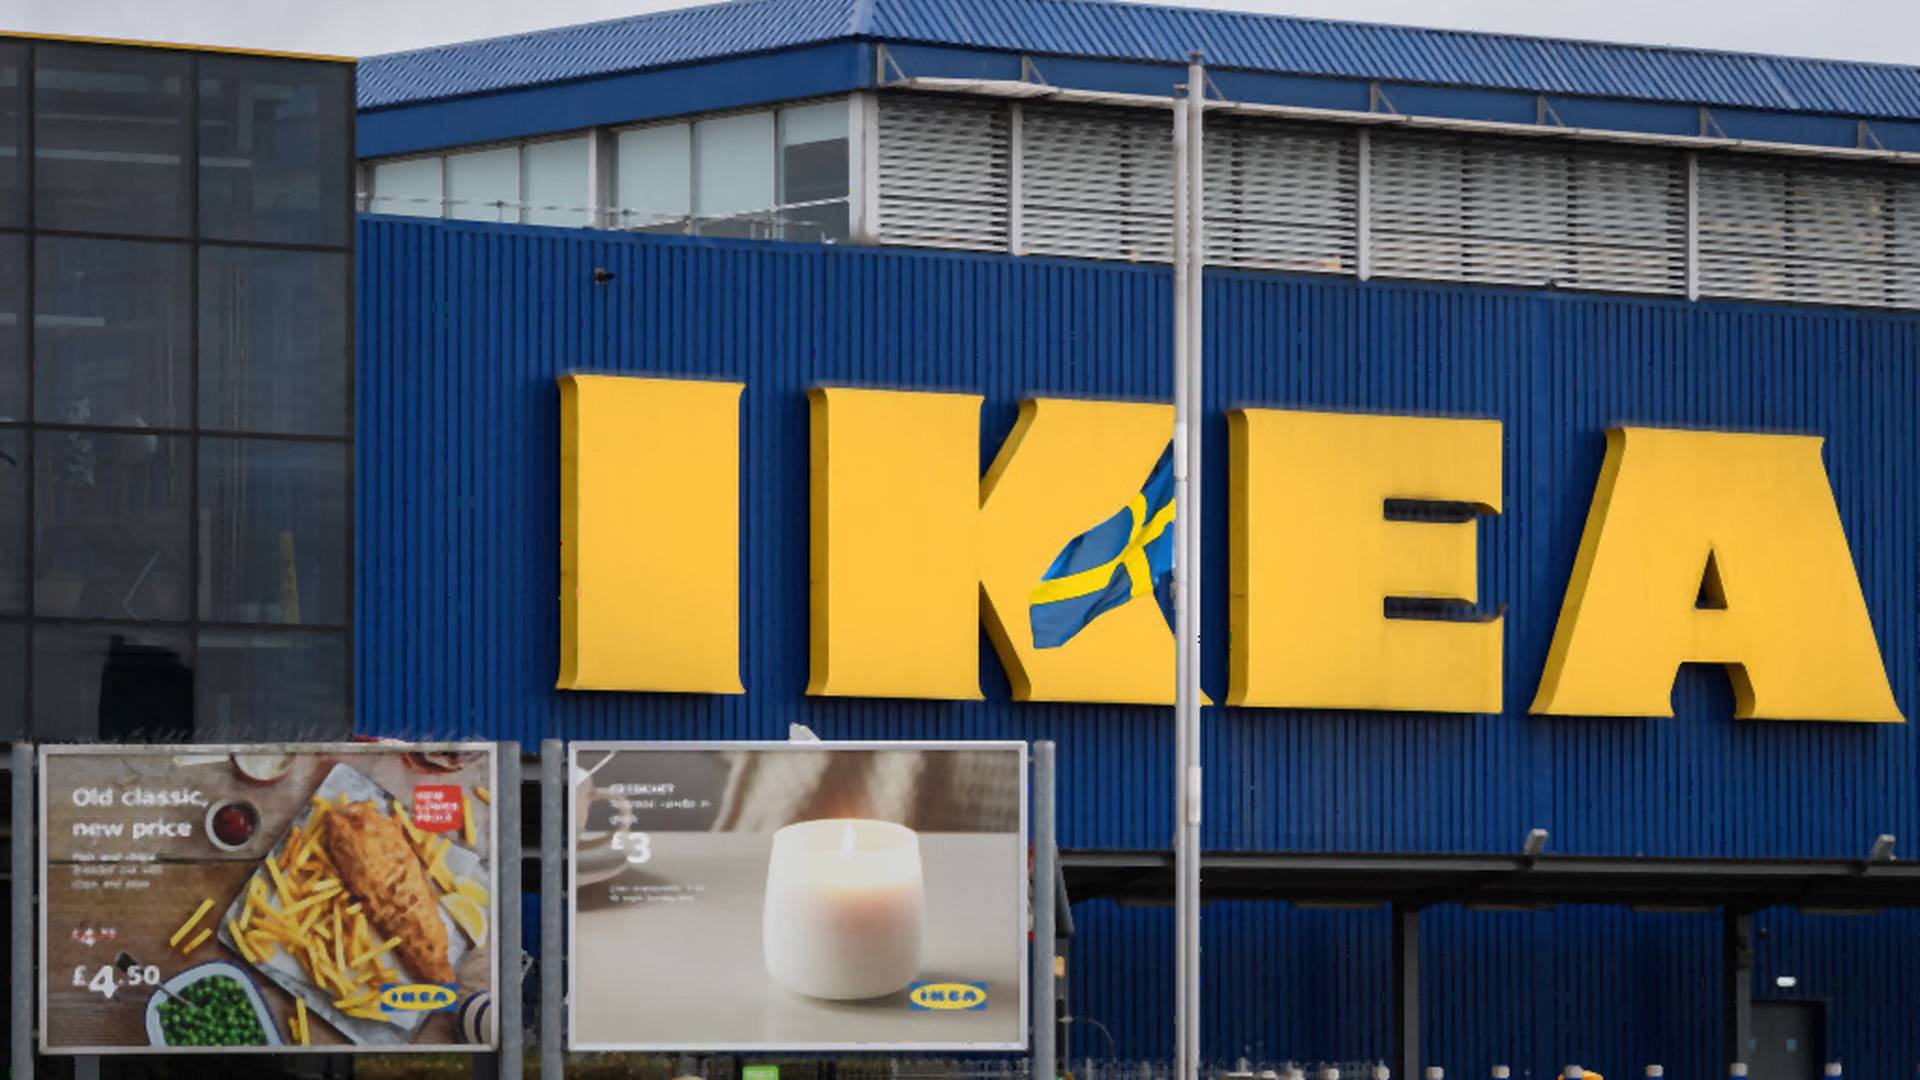 Titkos szobát fedeztek fel egy Ikeában a szemfüles vásárlók 